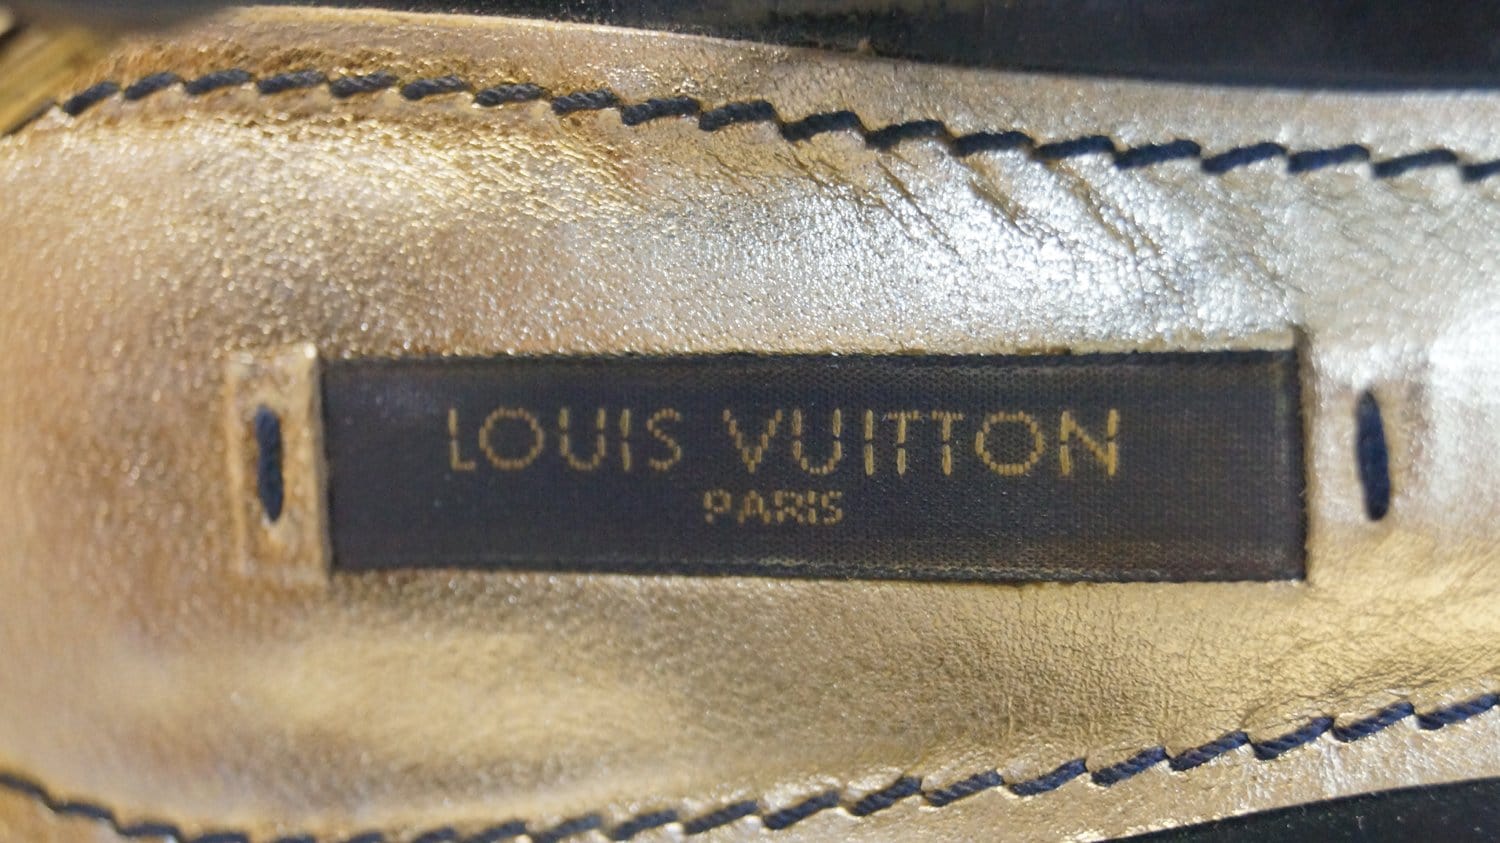 LOUIS VUITTON IDYLLE LV BUCI open toe heels 38-8 blue pumps LEATH monogram  $1600